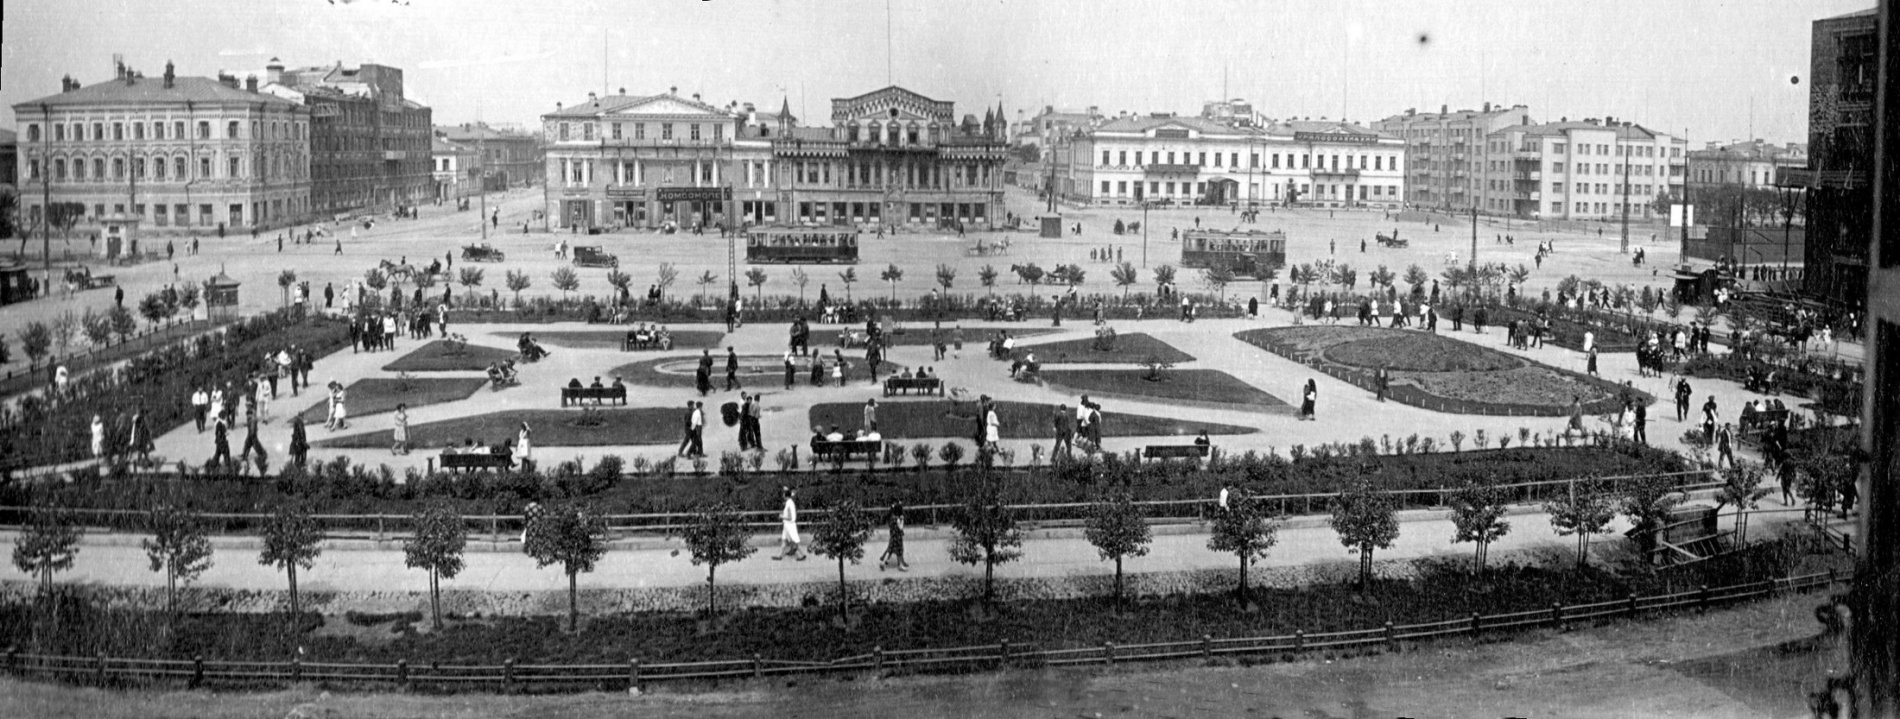 Вид от старого &ldquo;Пассажа&rdquo; на сквер. В правом верхнем углу - площадь 1905 года еще без Ленина, прямо на заднем плане - современный ТЦ &ldquo;Европа&rdquo;, дом купцов Коробковых